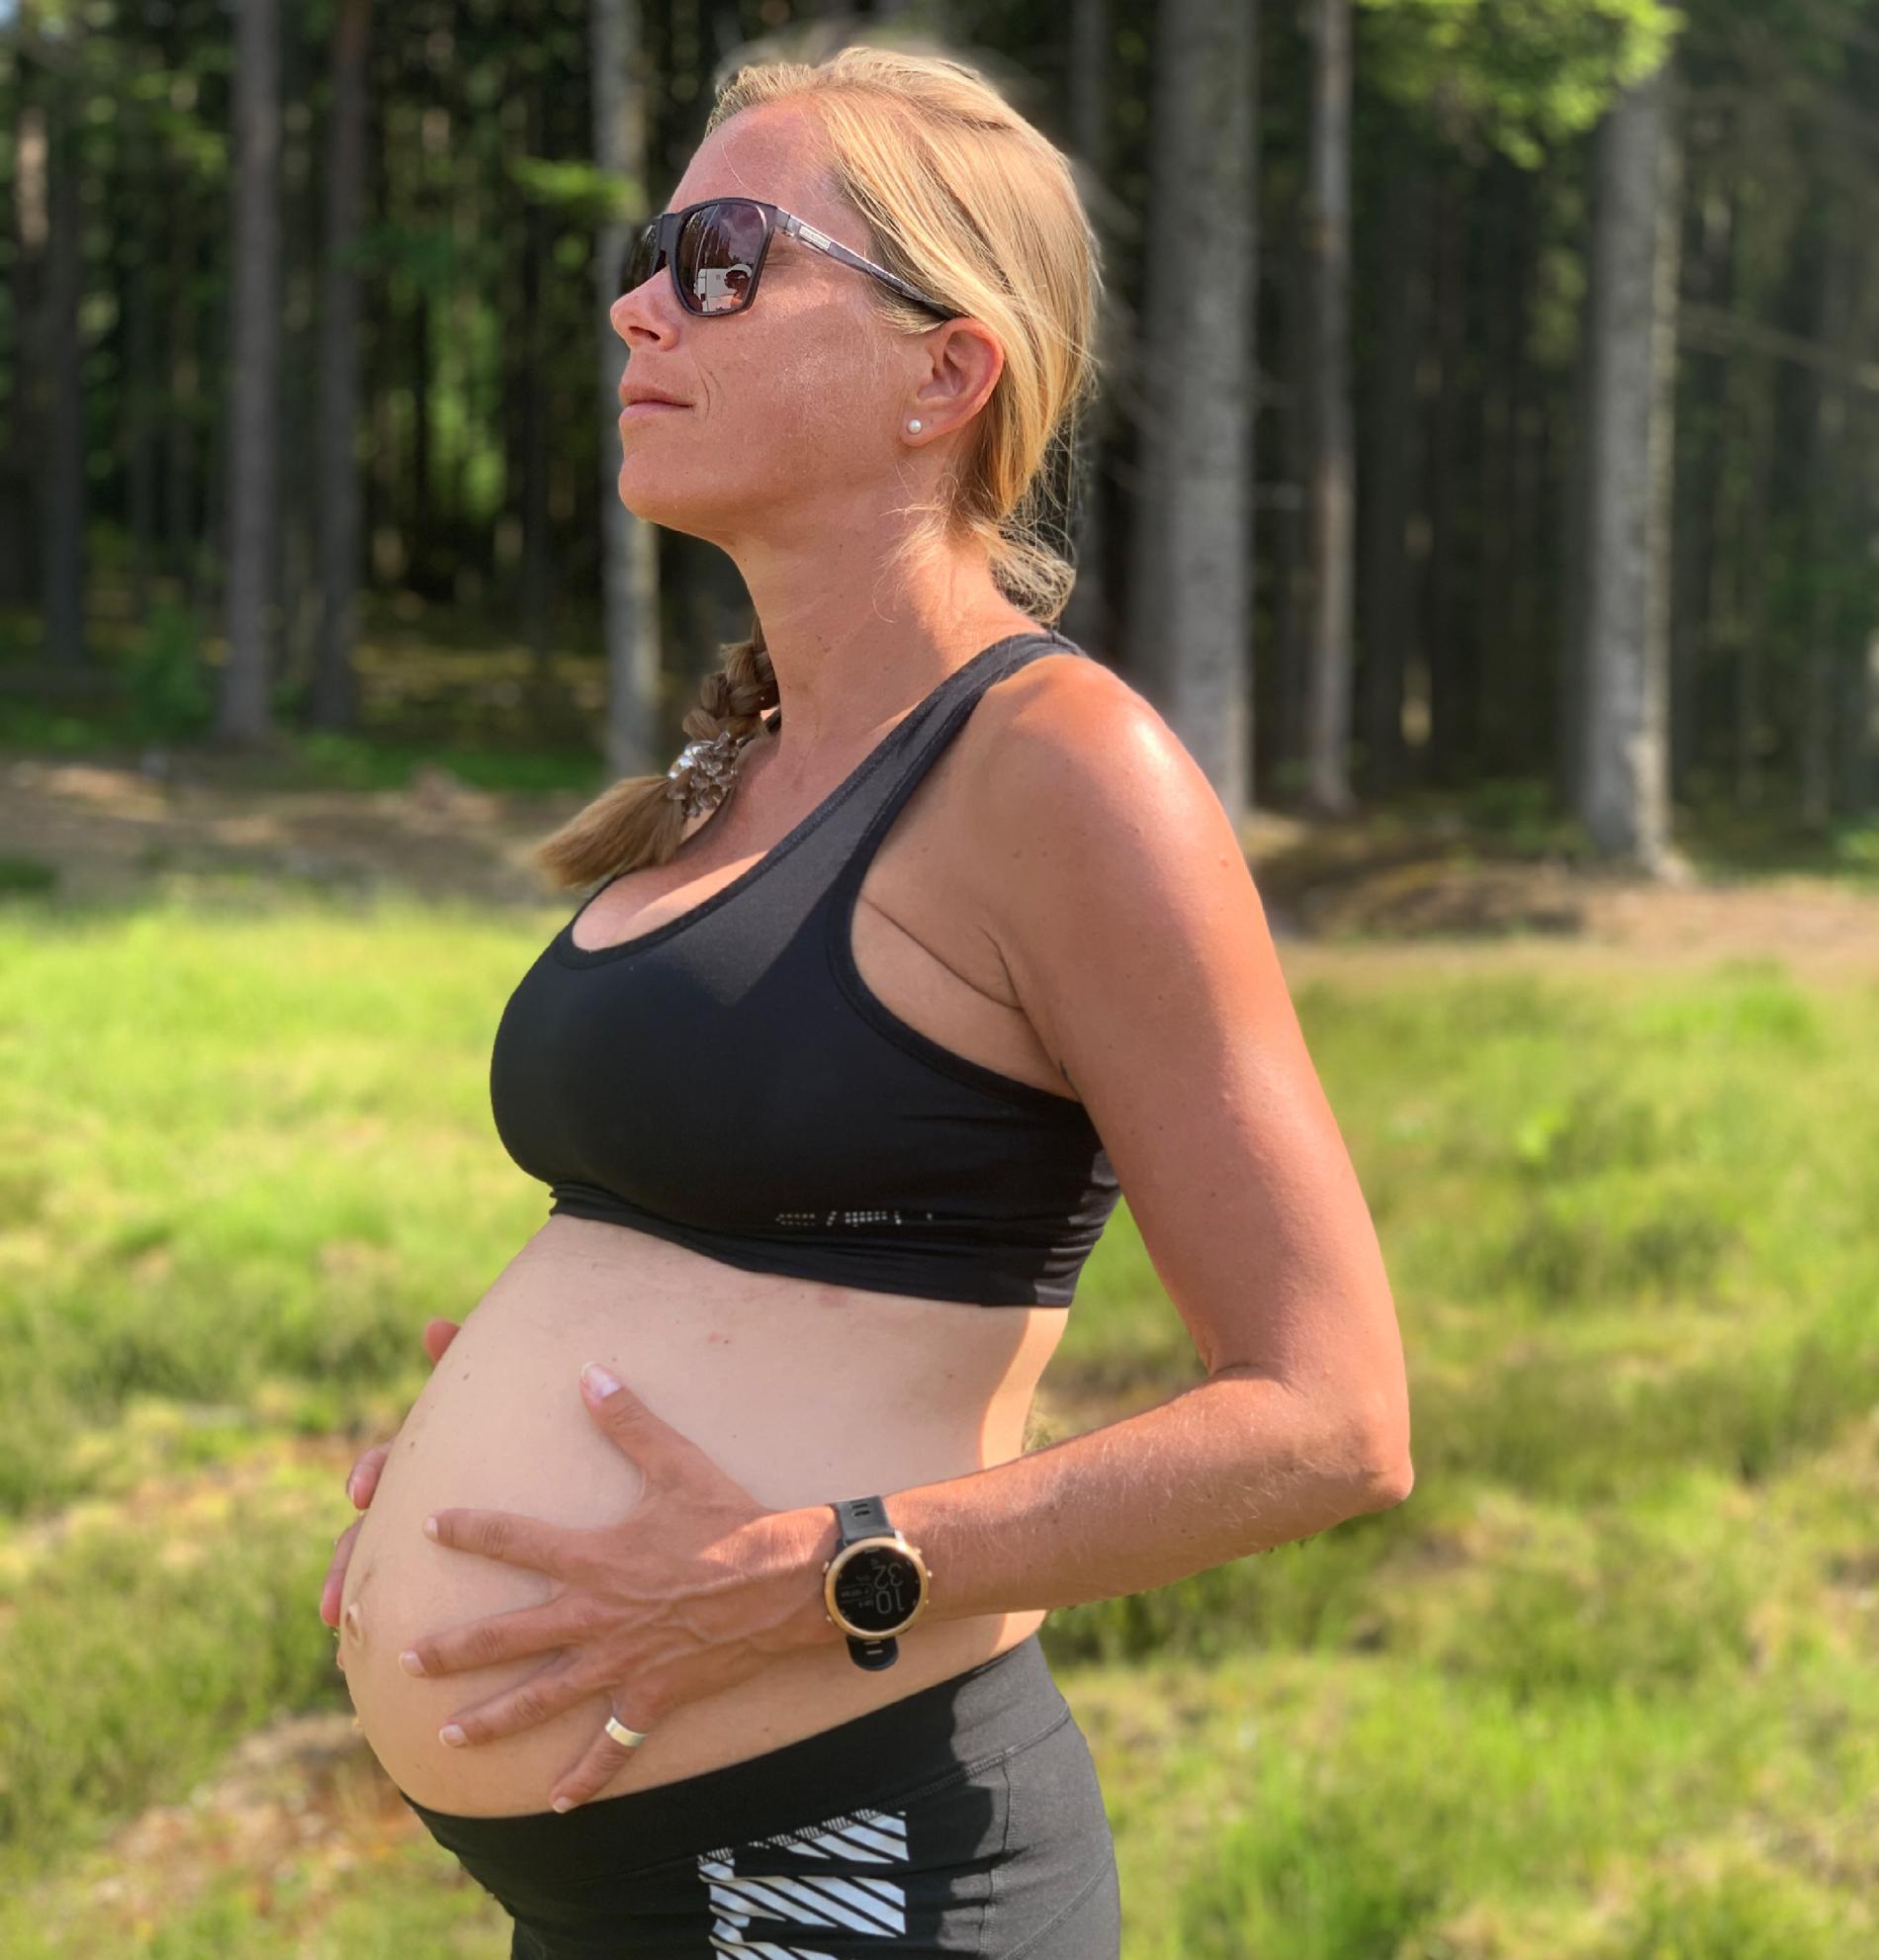 Frida är gravid med sitt första barn. Efter förlossningen planerar hon att tävla igen så snart det går. 